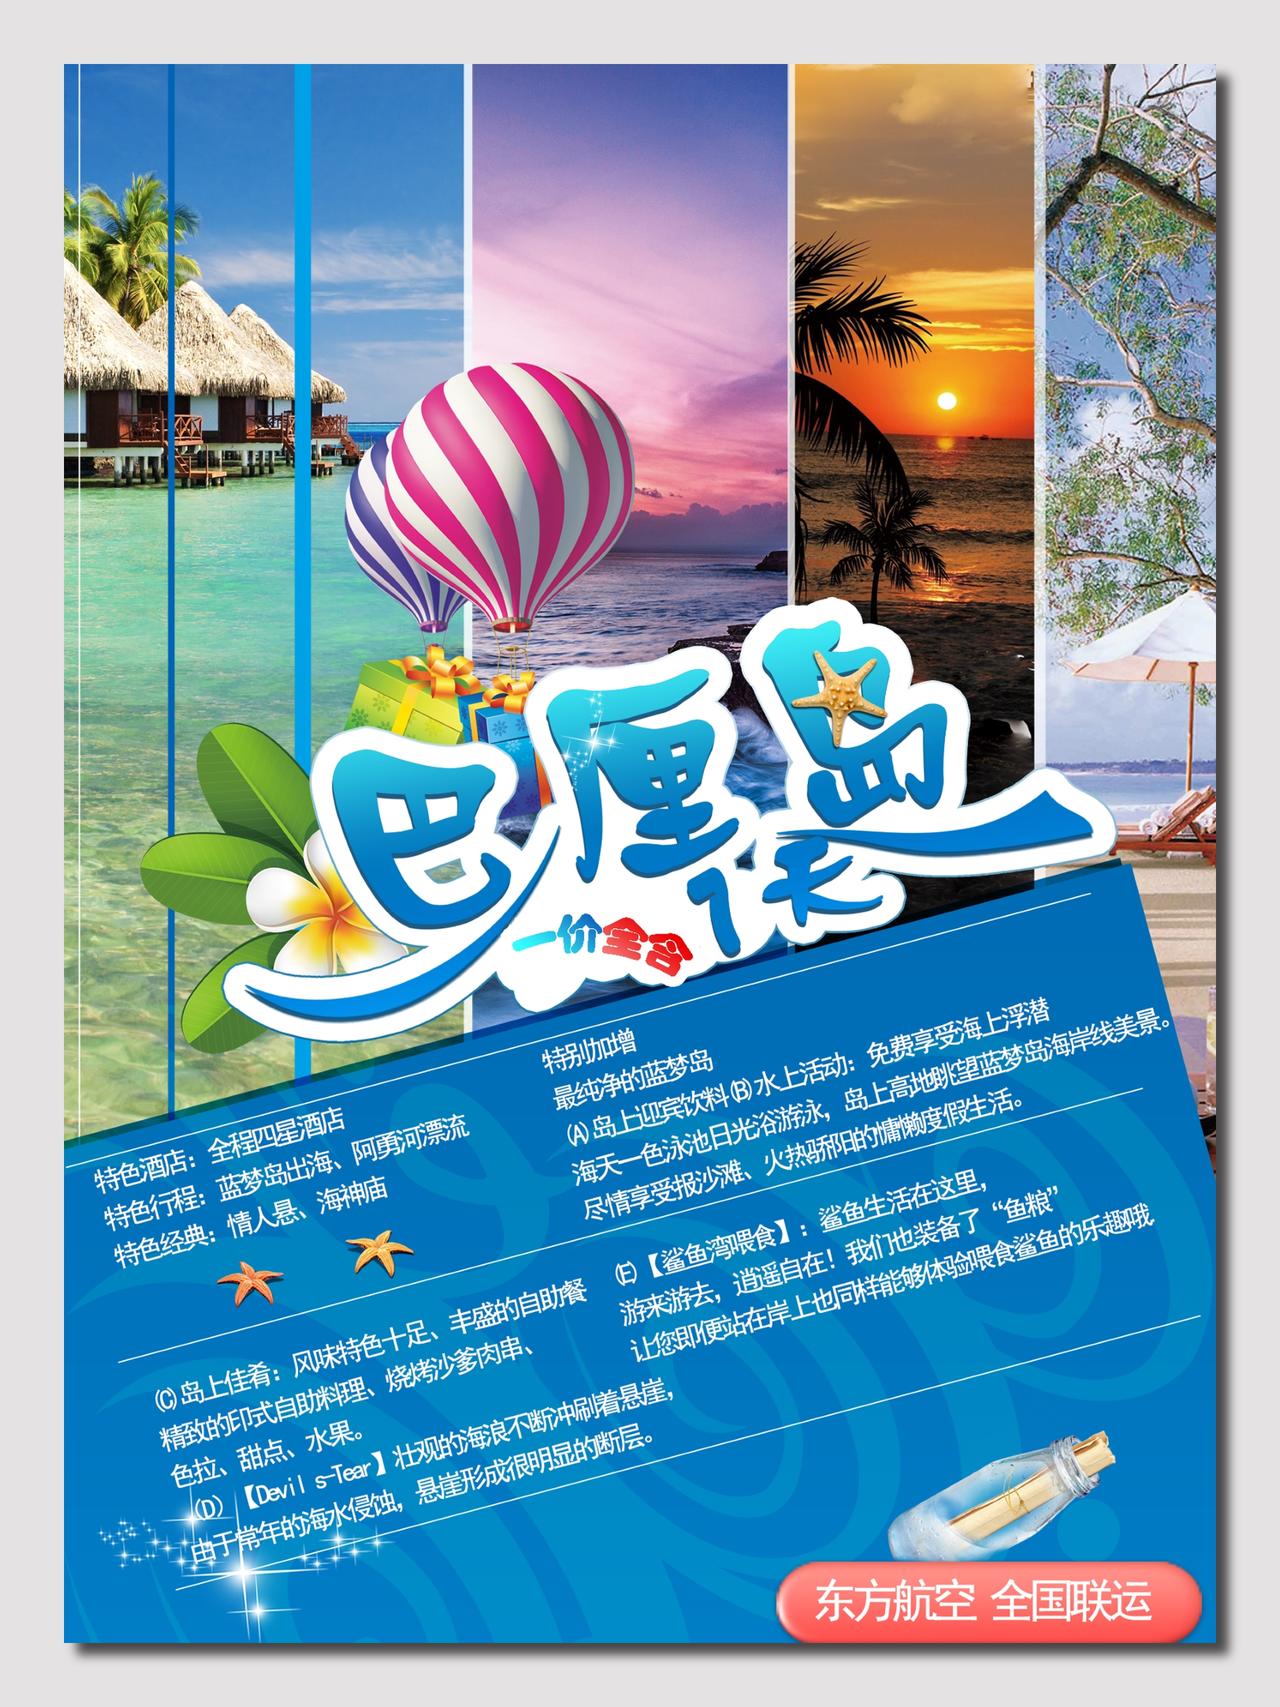 巴厘岛旅游7天路线宣传海报